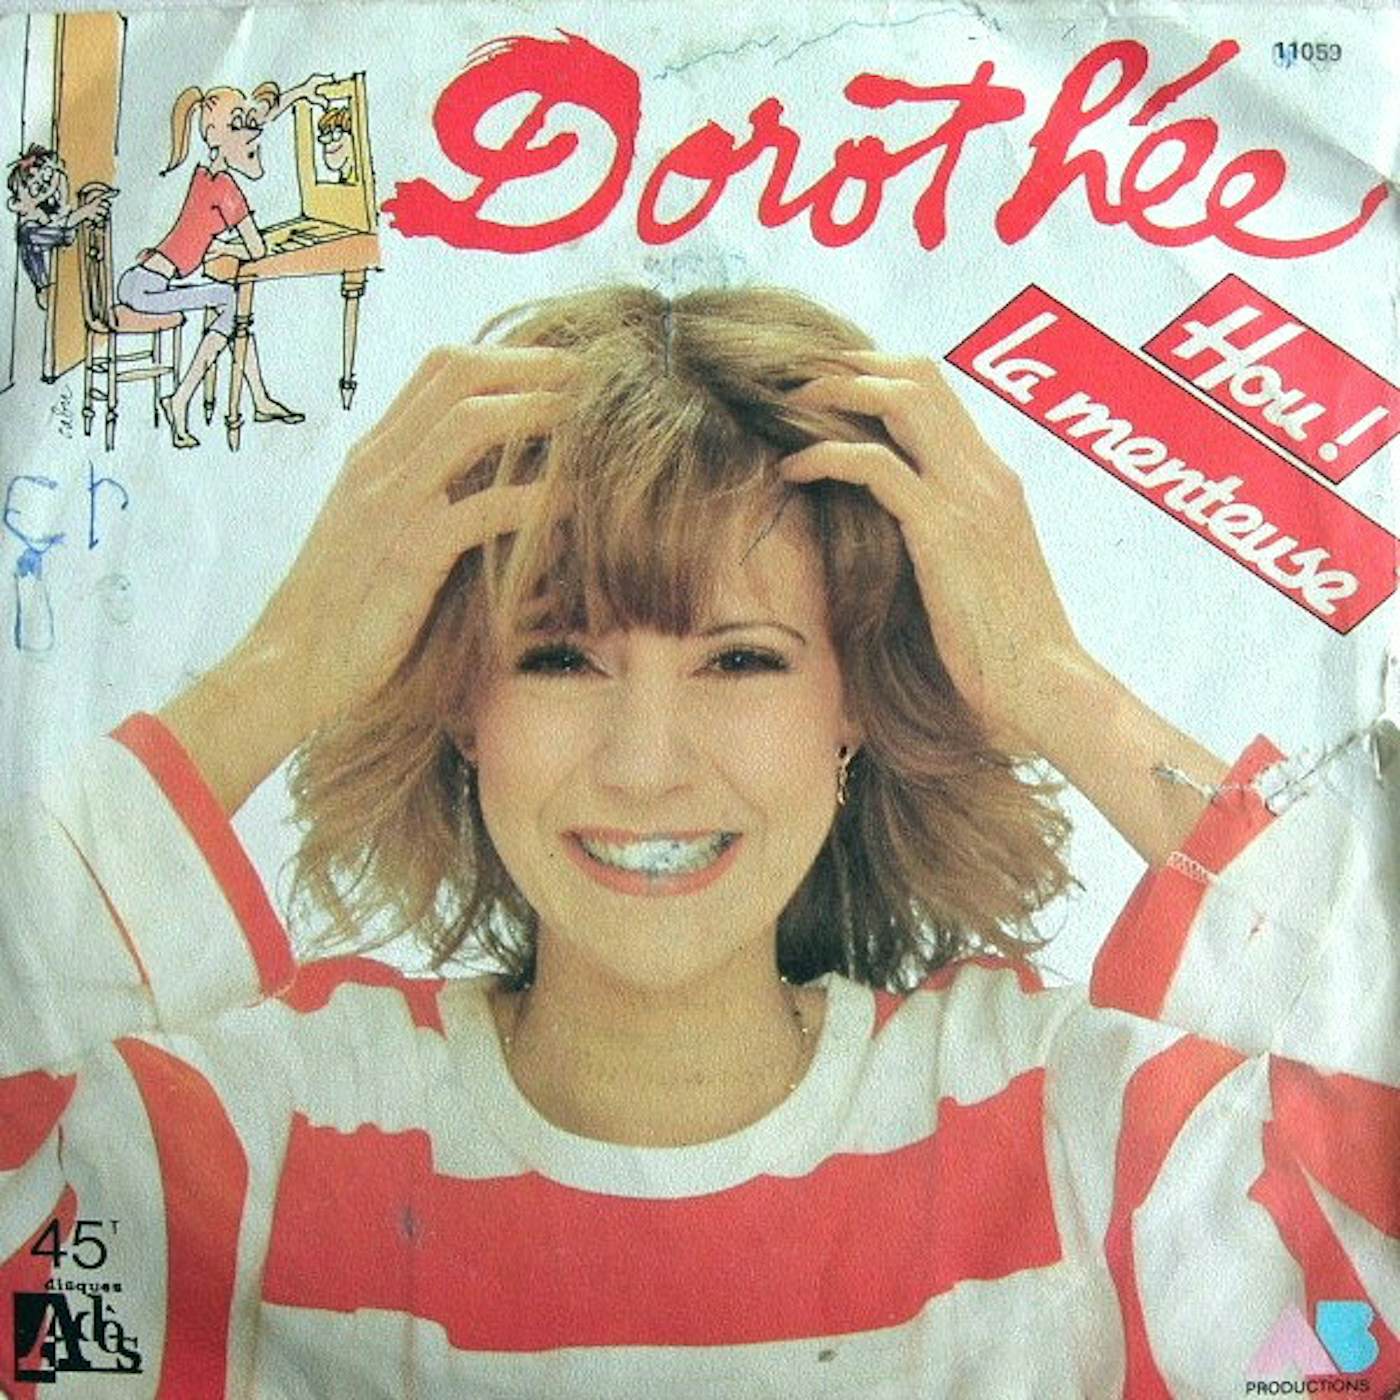 Dorothee HOU LA MENTEUSE Vinyl Record